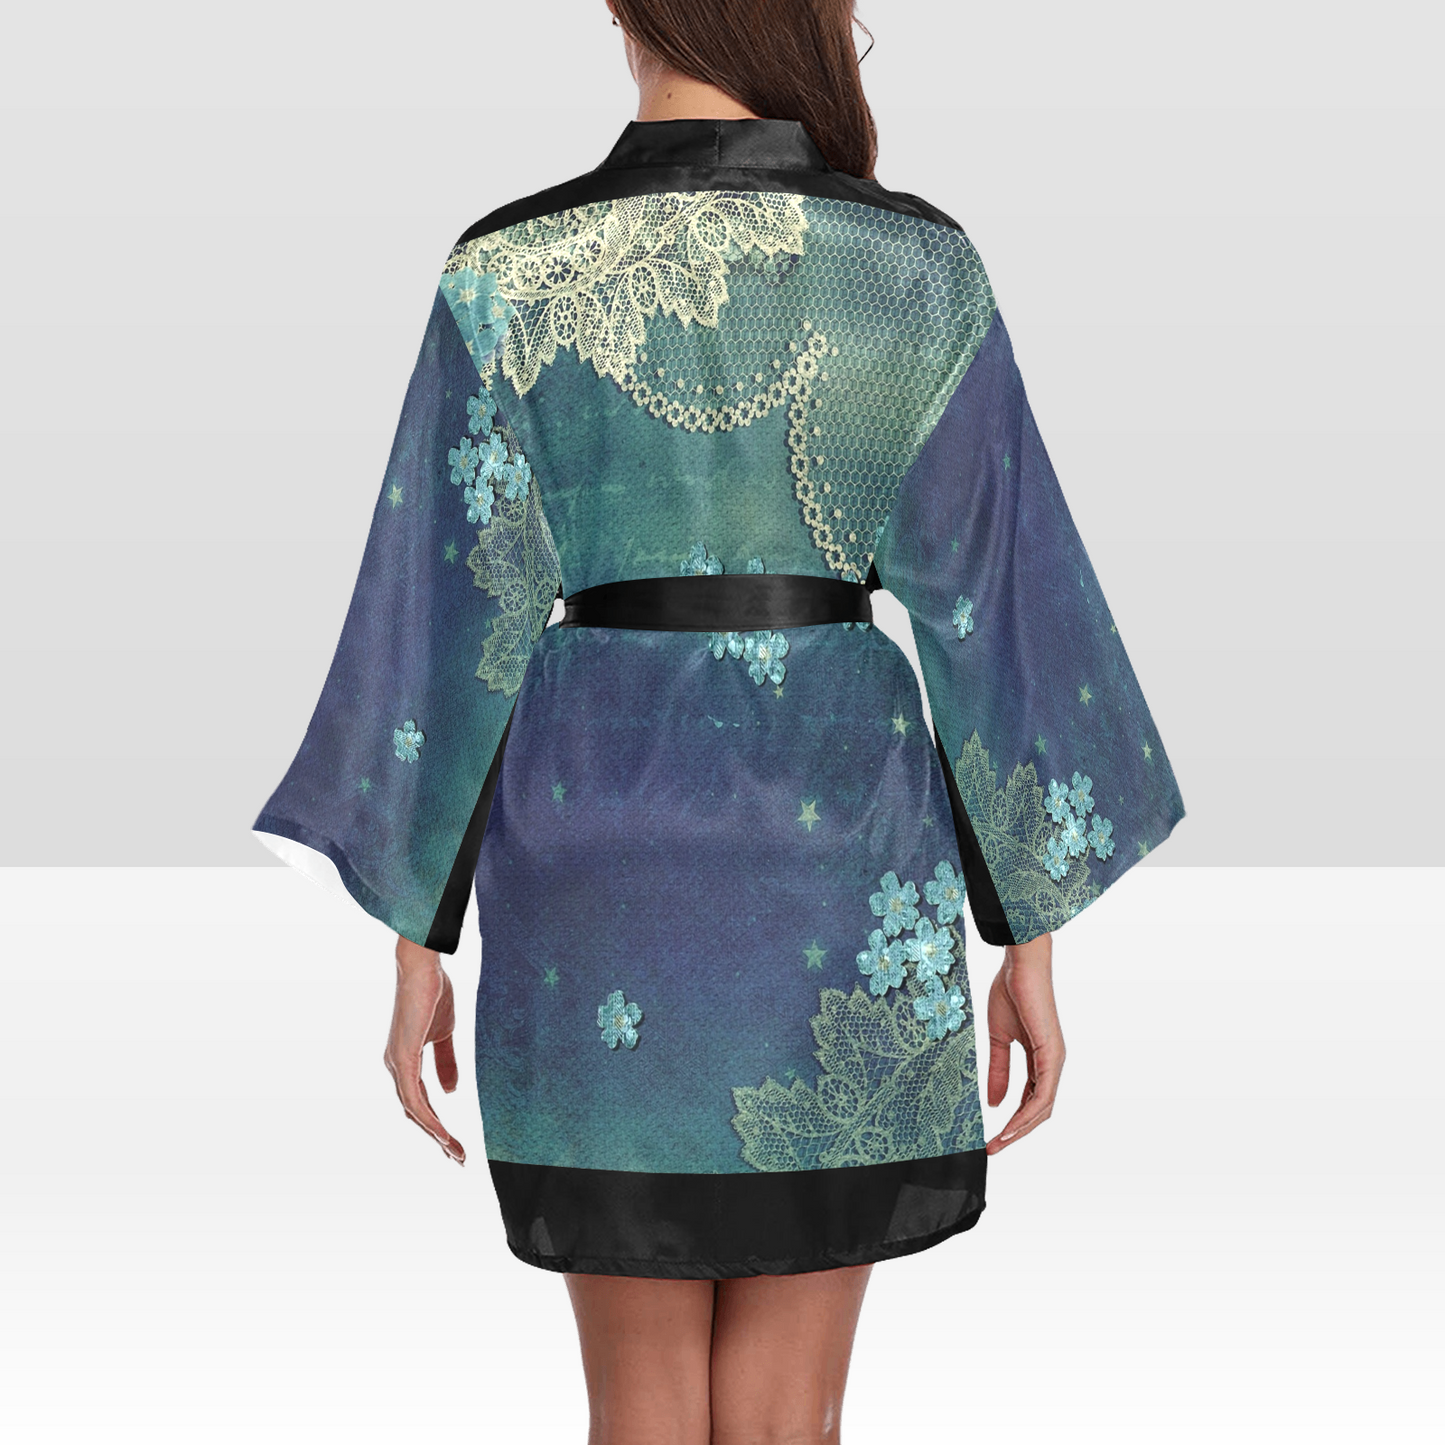 Victorian Lace Kimono Robe, Black or White Trim, Sizes XS to 2XL, Design 04